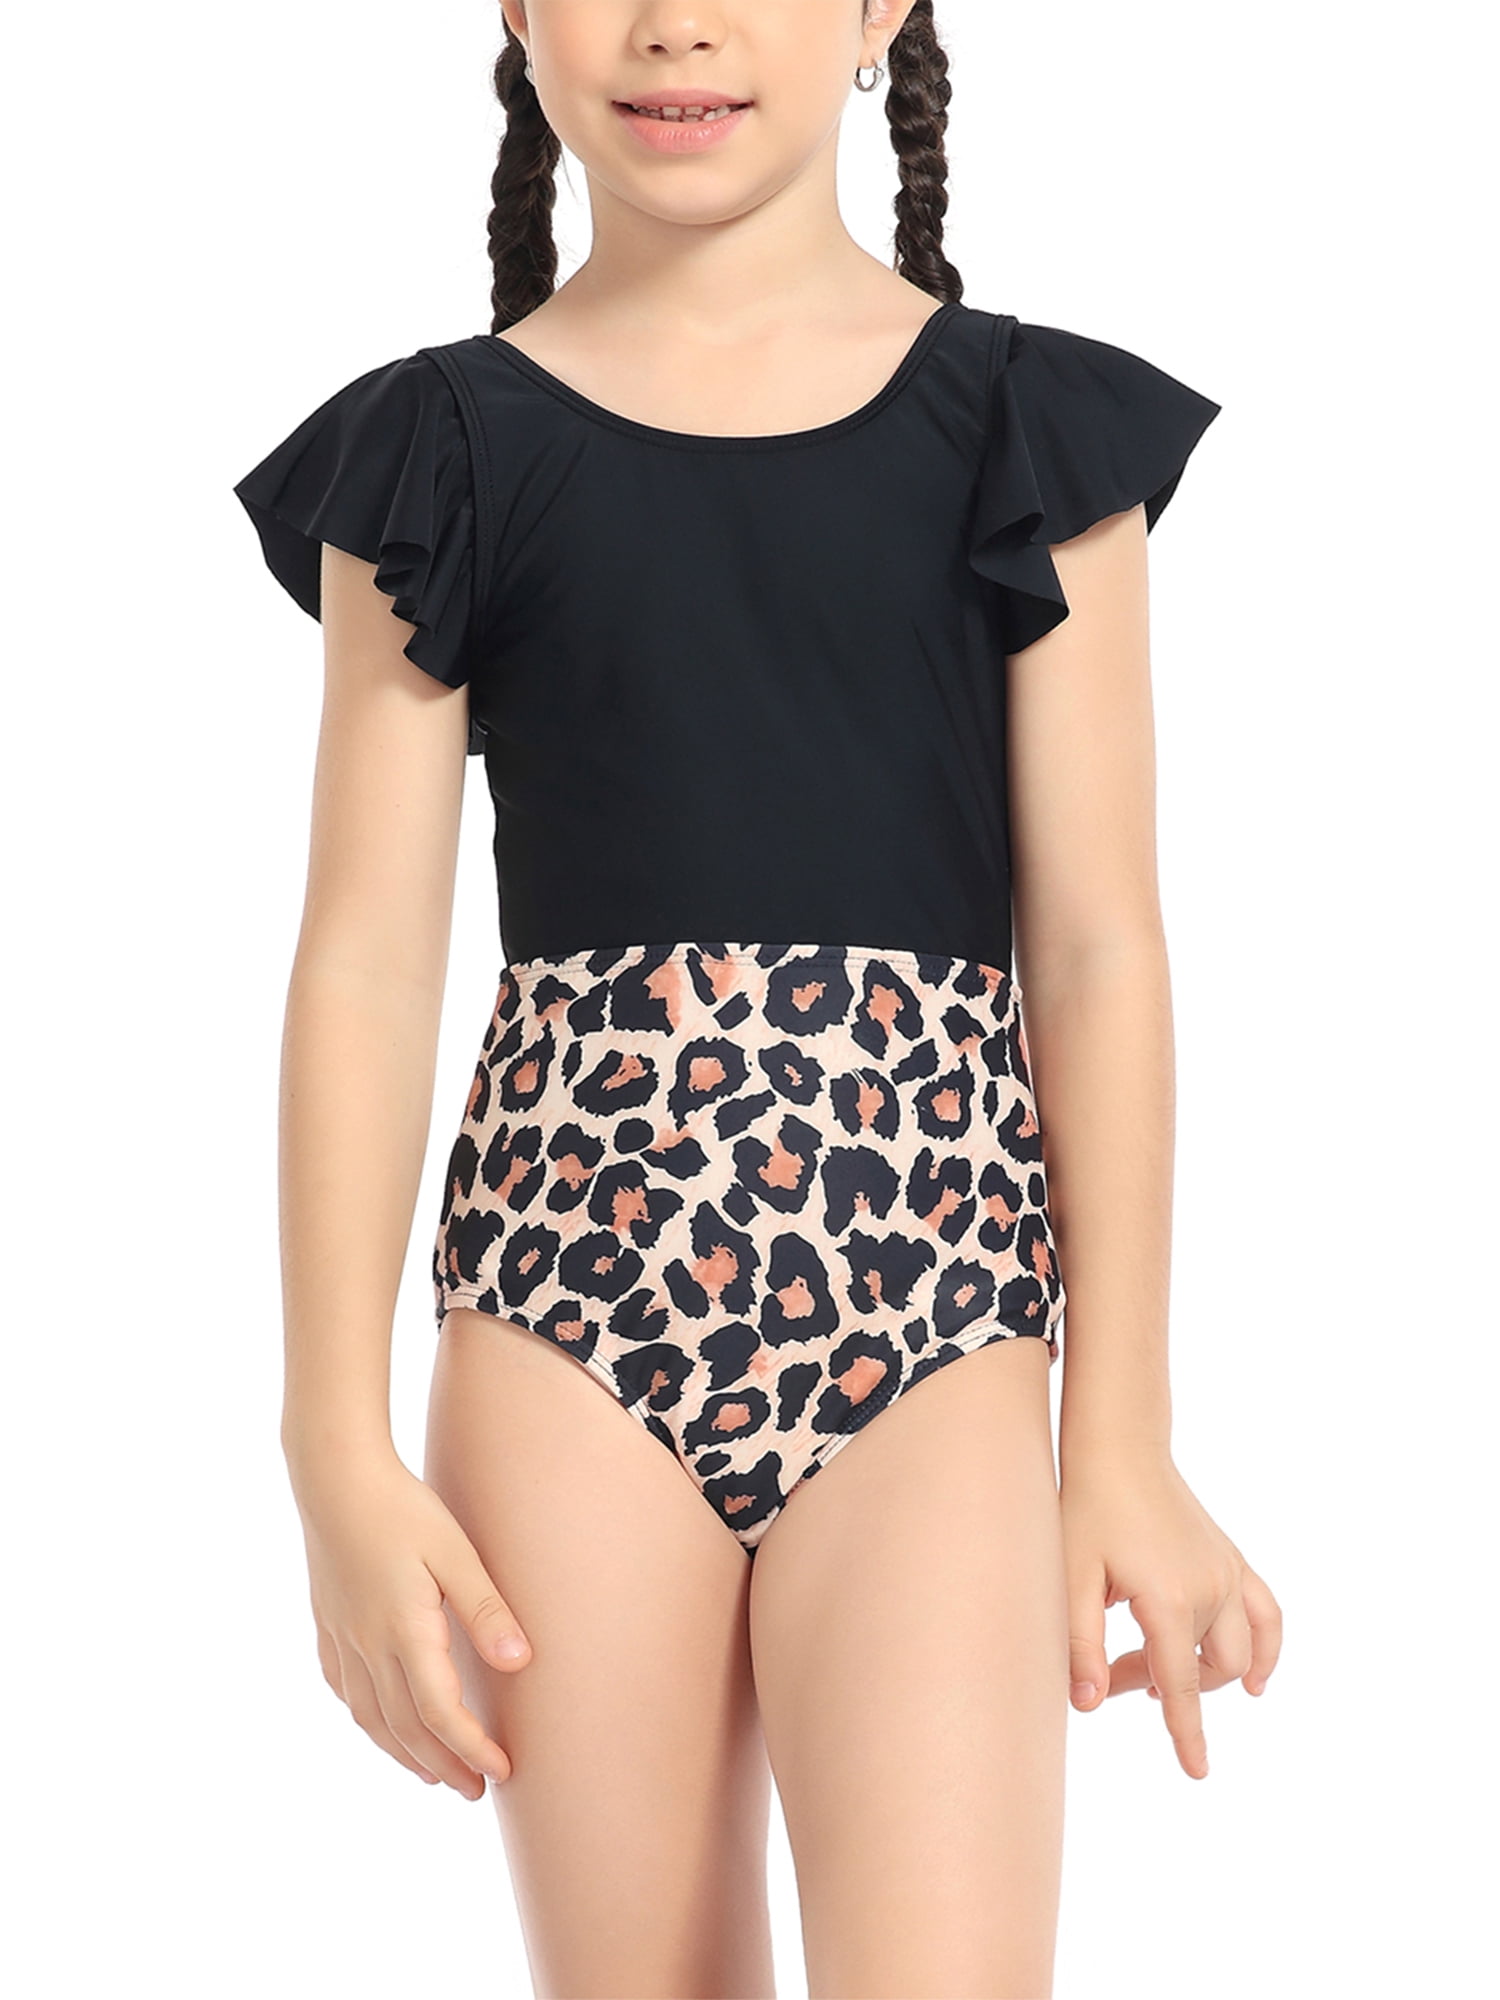 SO Kohls Girls Size 12 One Piece Swimsuit Multicolored Leopard Print  Swimwear